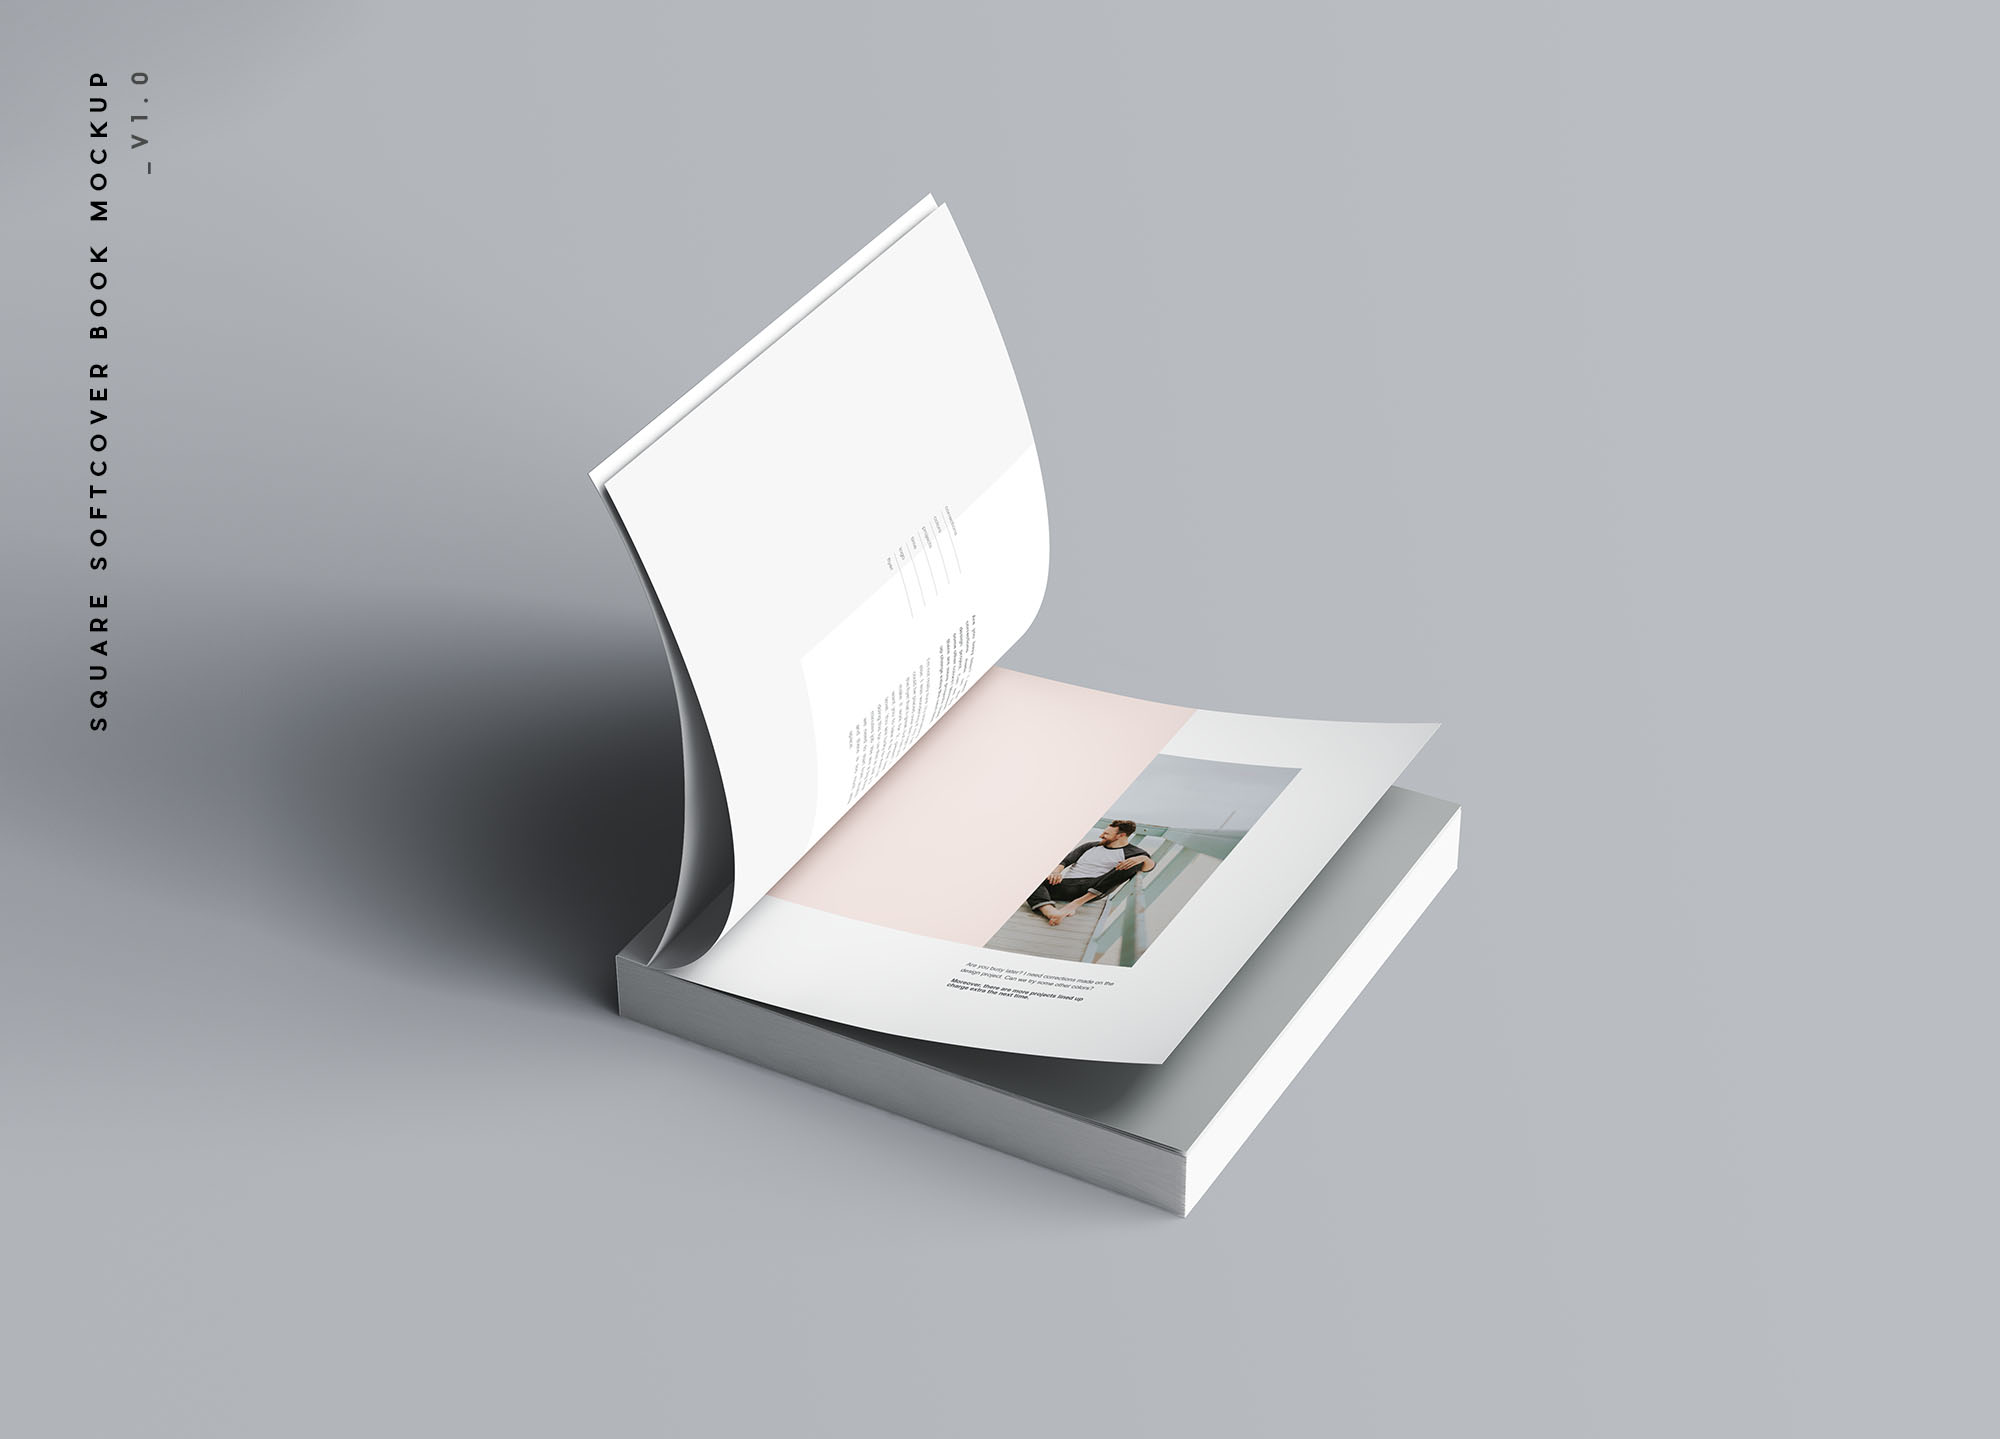 方形软封图书内页版式设计效果图样机非凡图库精选 Square Softcover Book Mockup插图